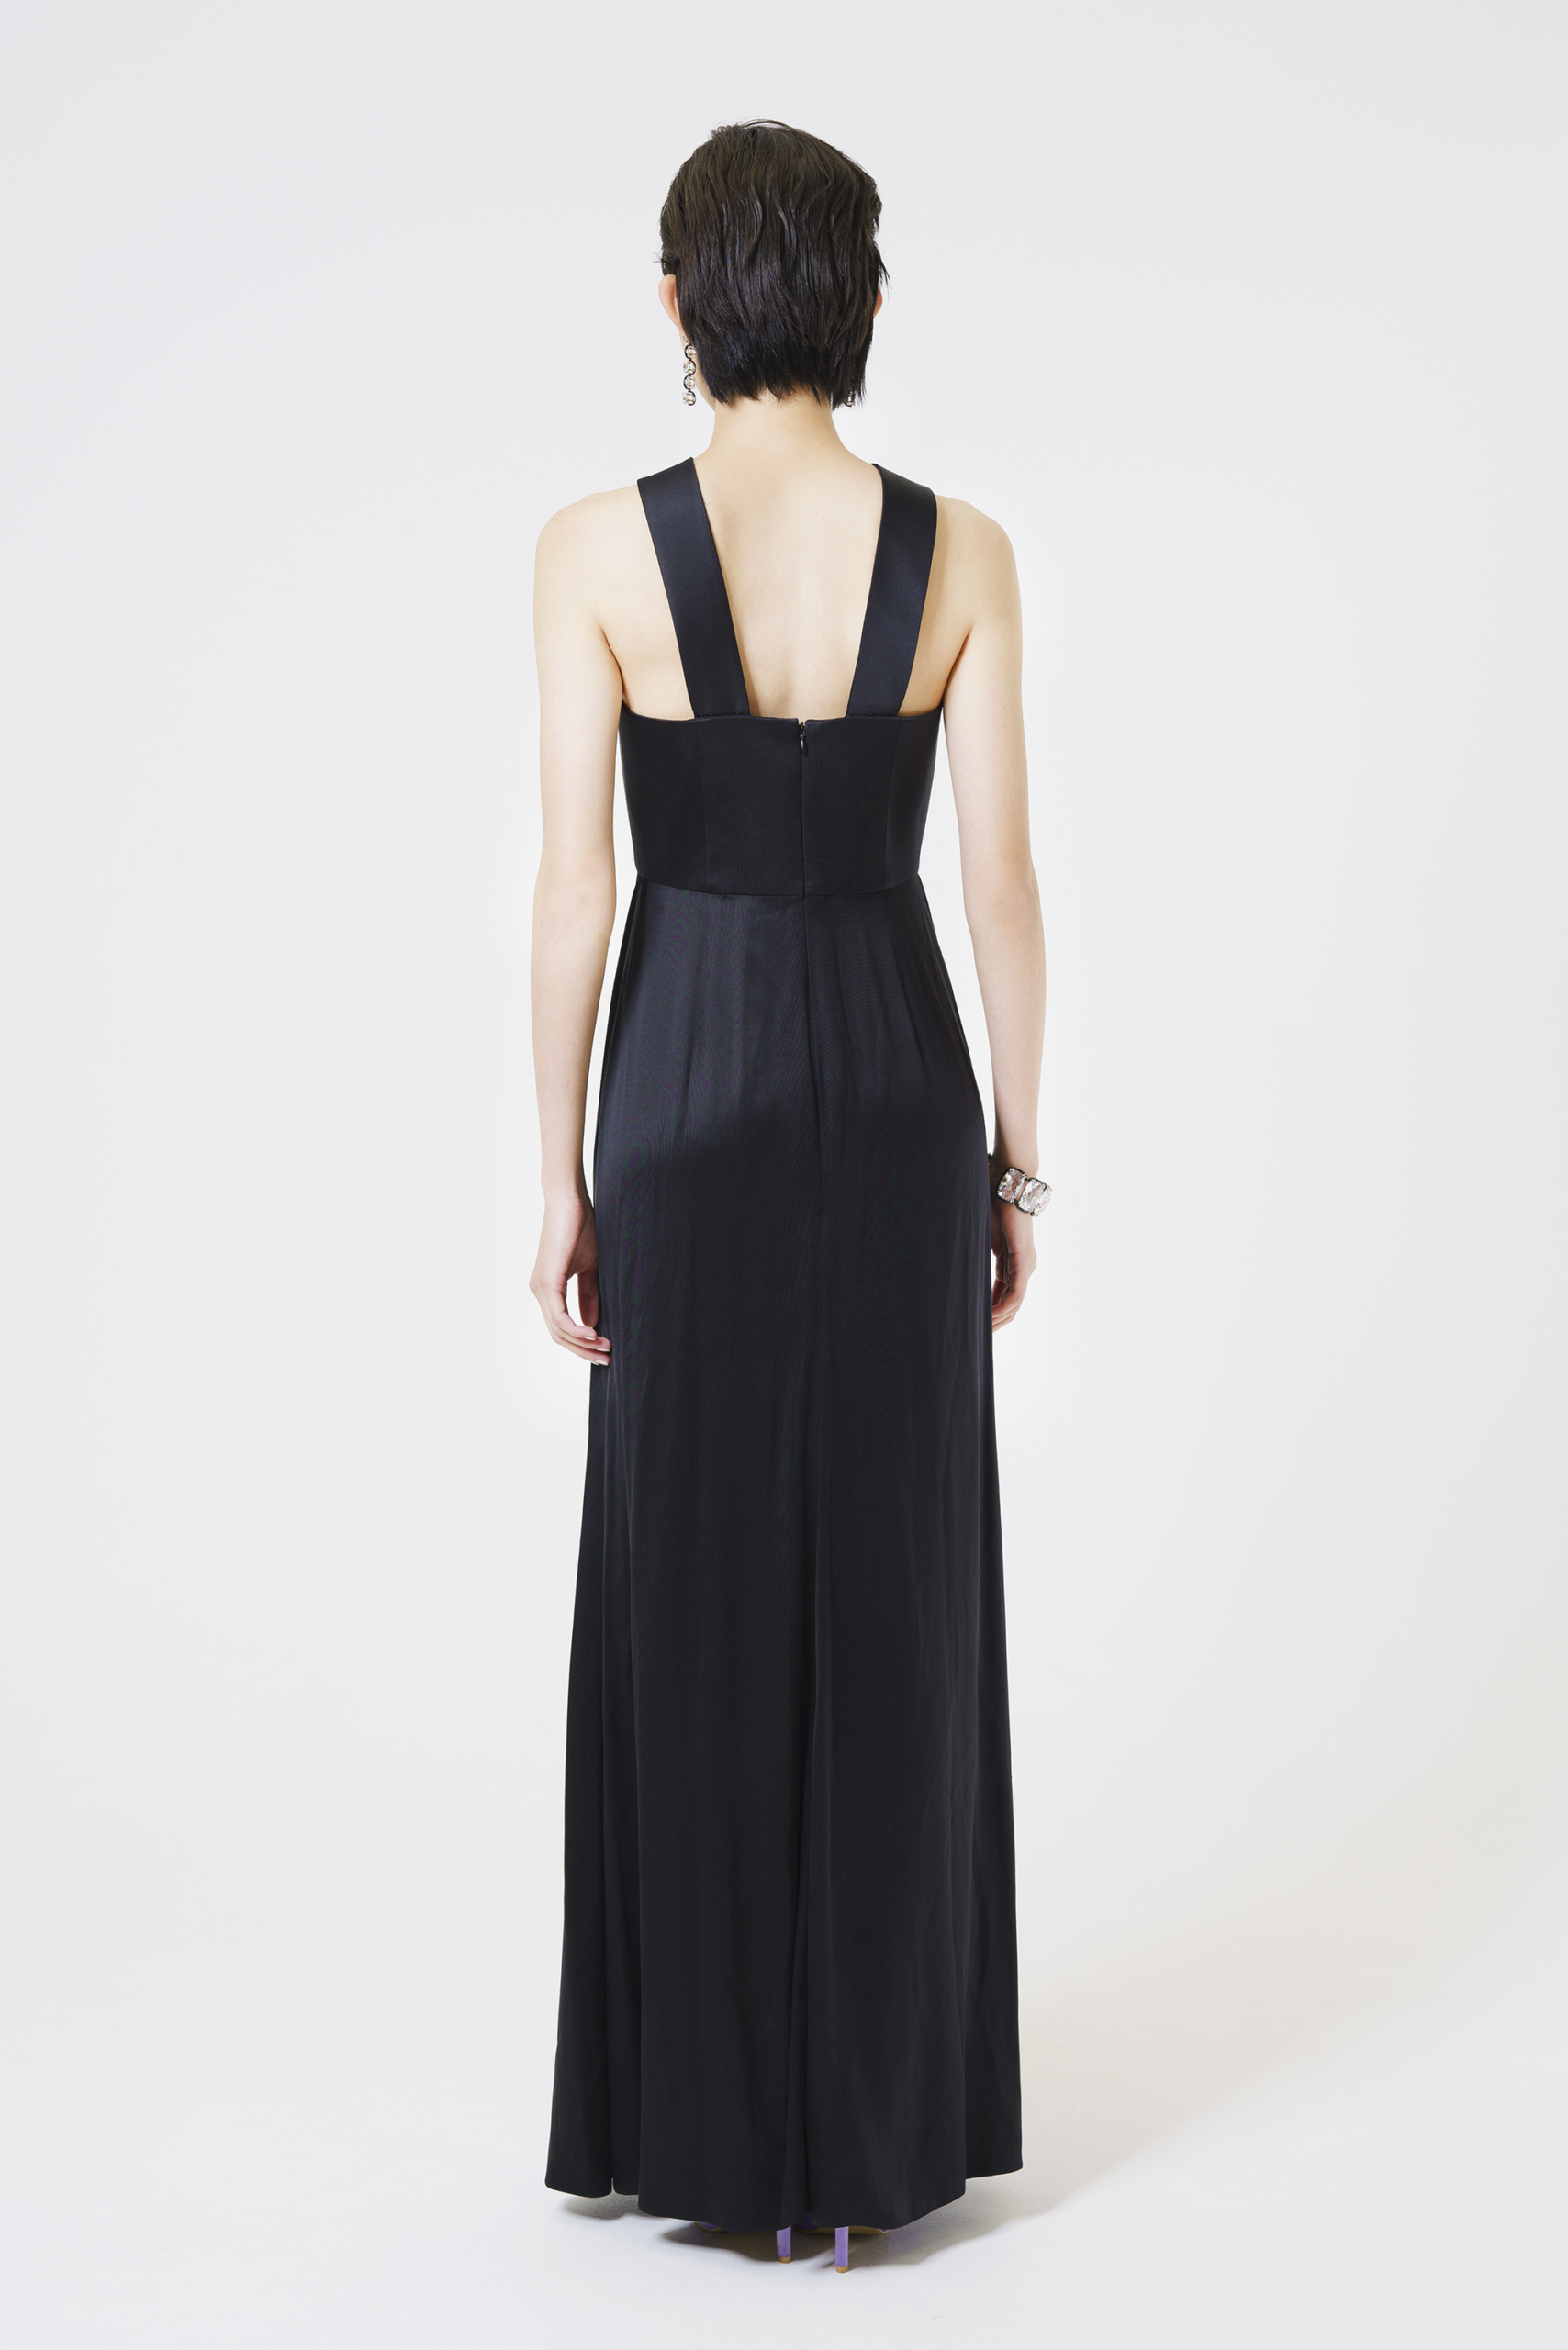 GIORGIO ARMANI 黒ロングドレス |ハイブランド・海外ブランドのドレス 